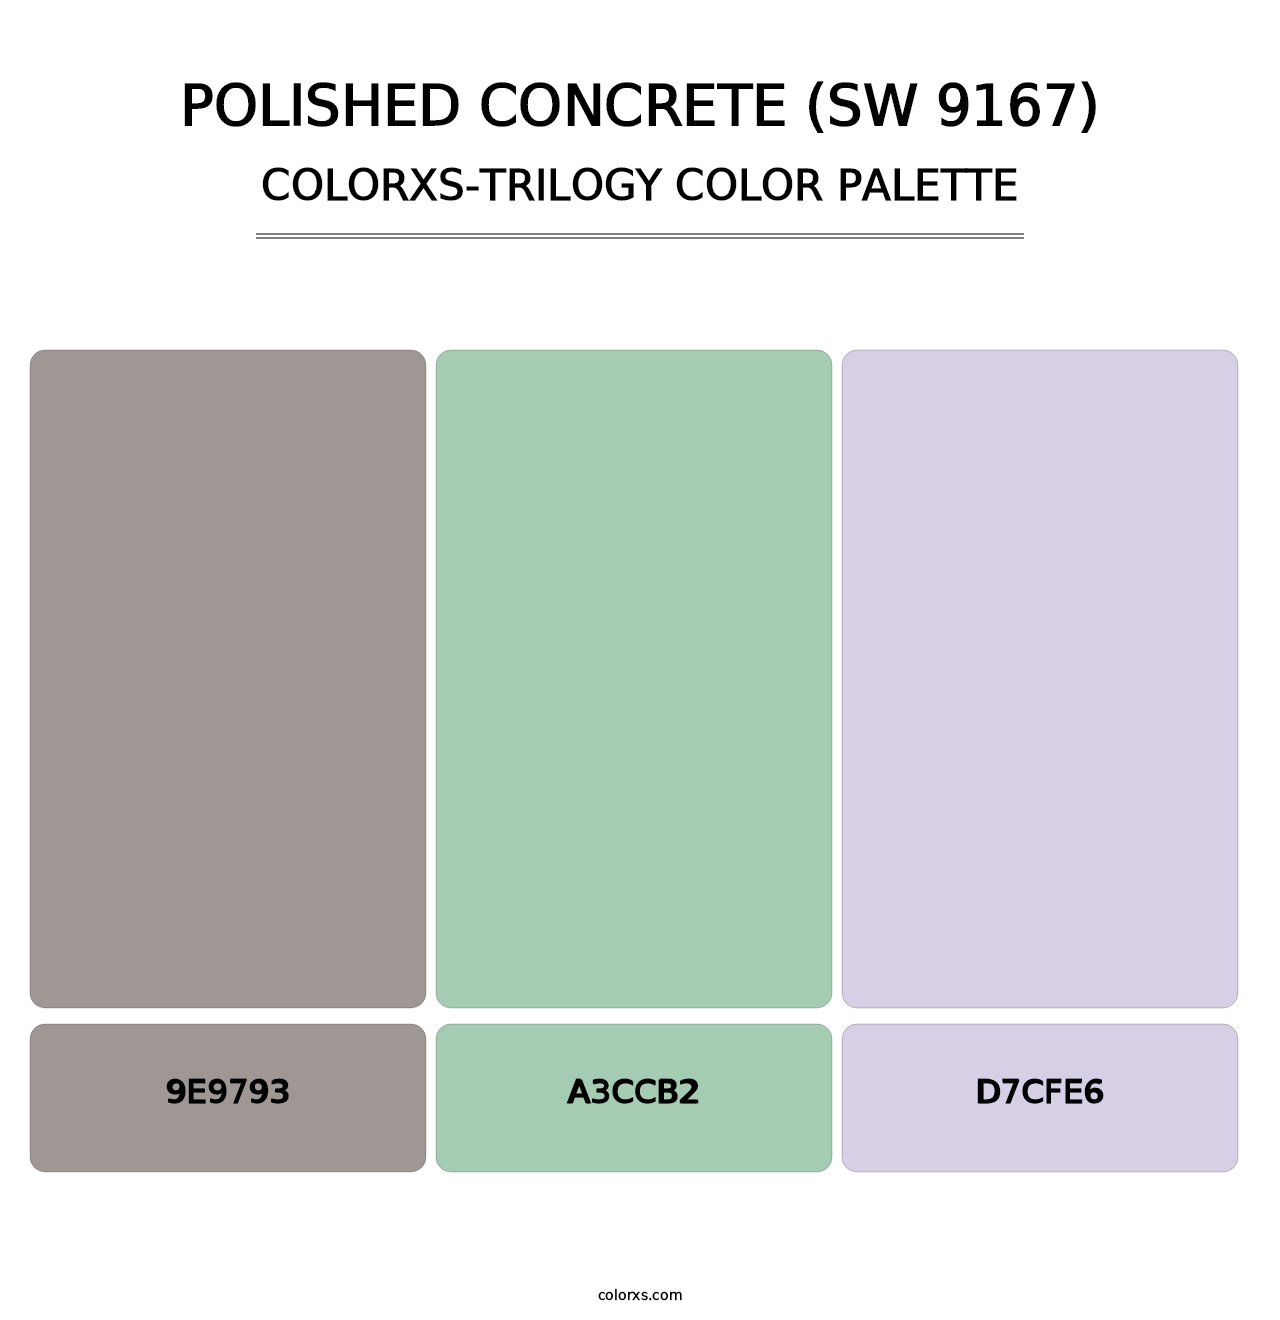 Polished Concrete (SW 9167) - Colorxs Trilogy Palette